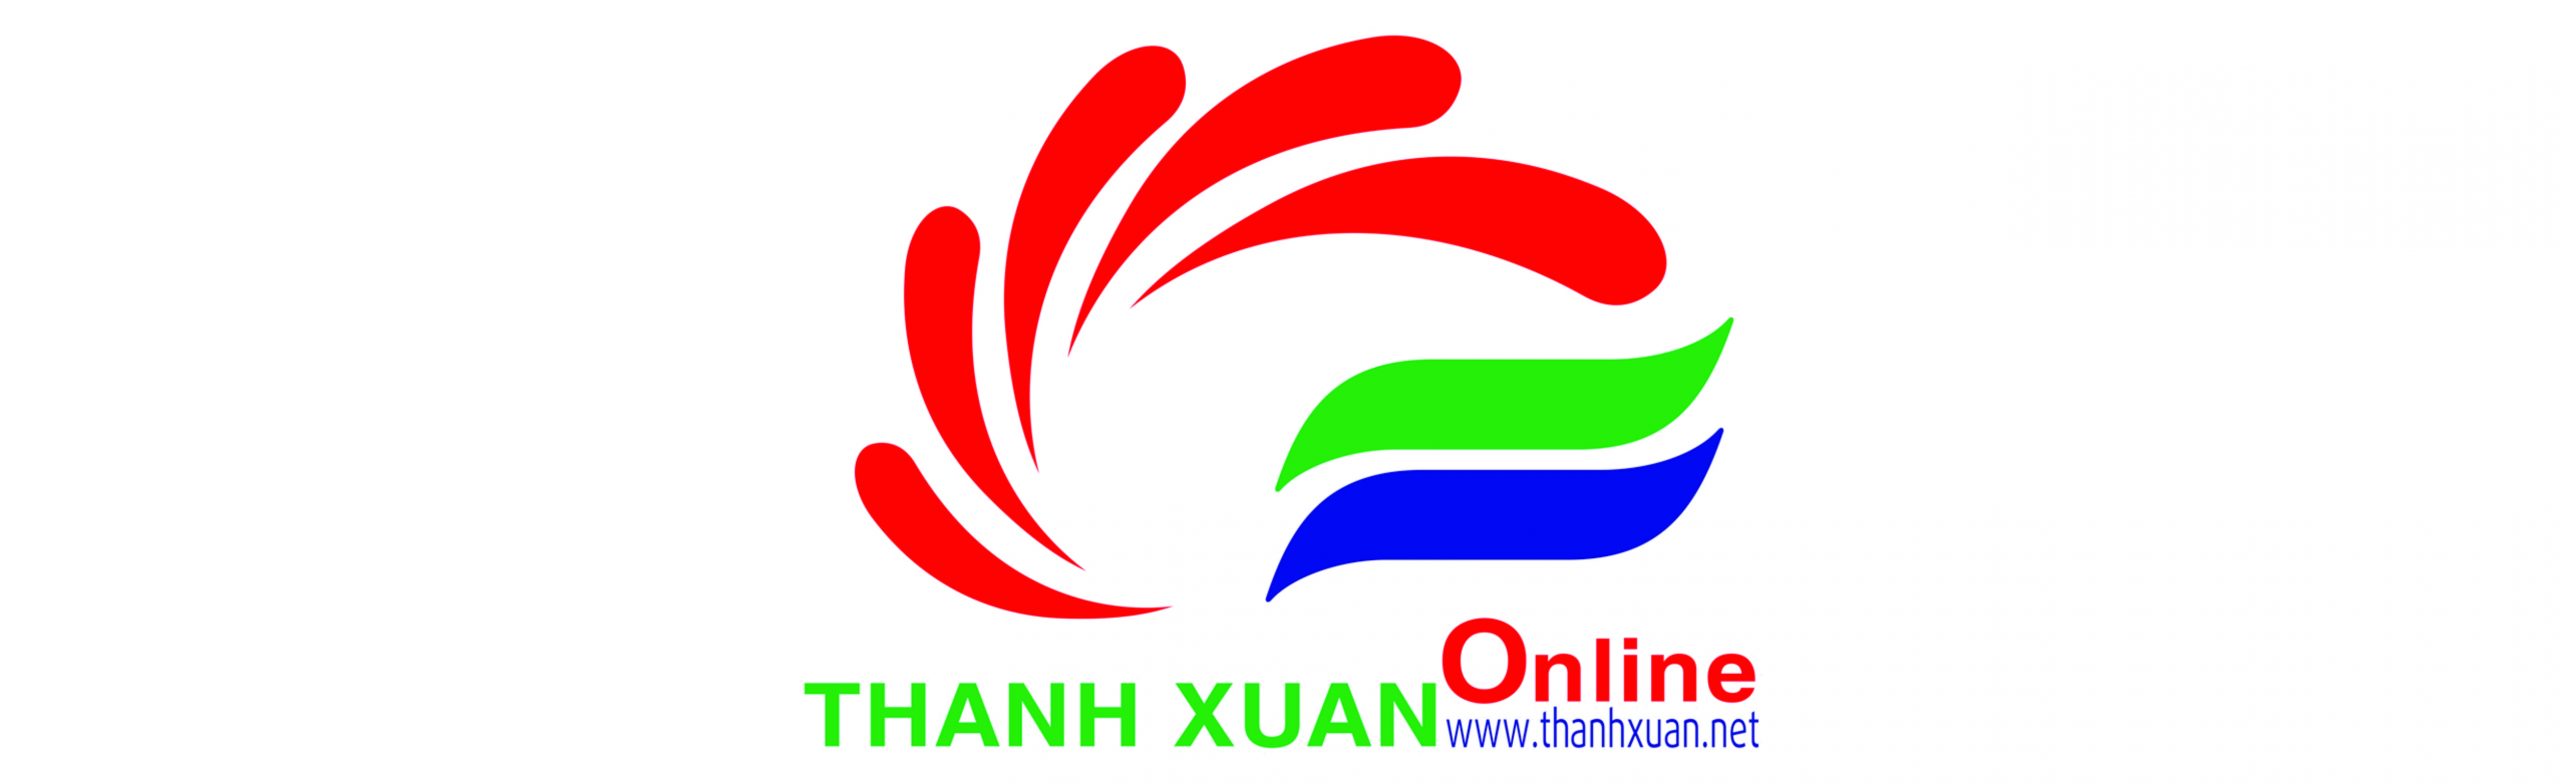 Thanh Xuân Online